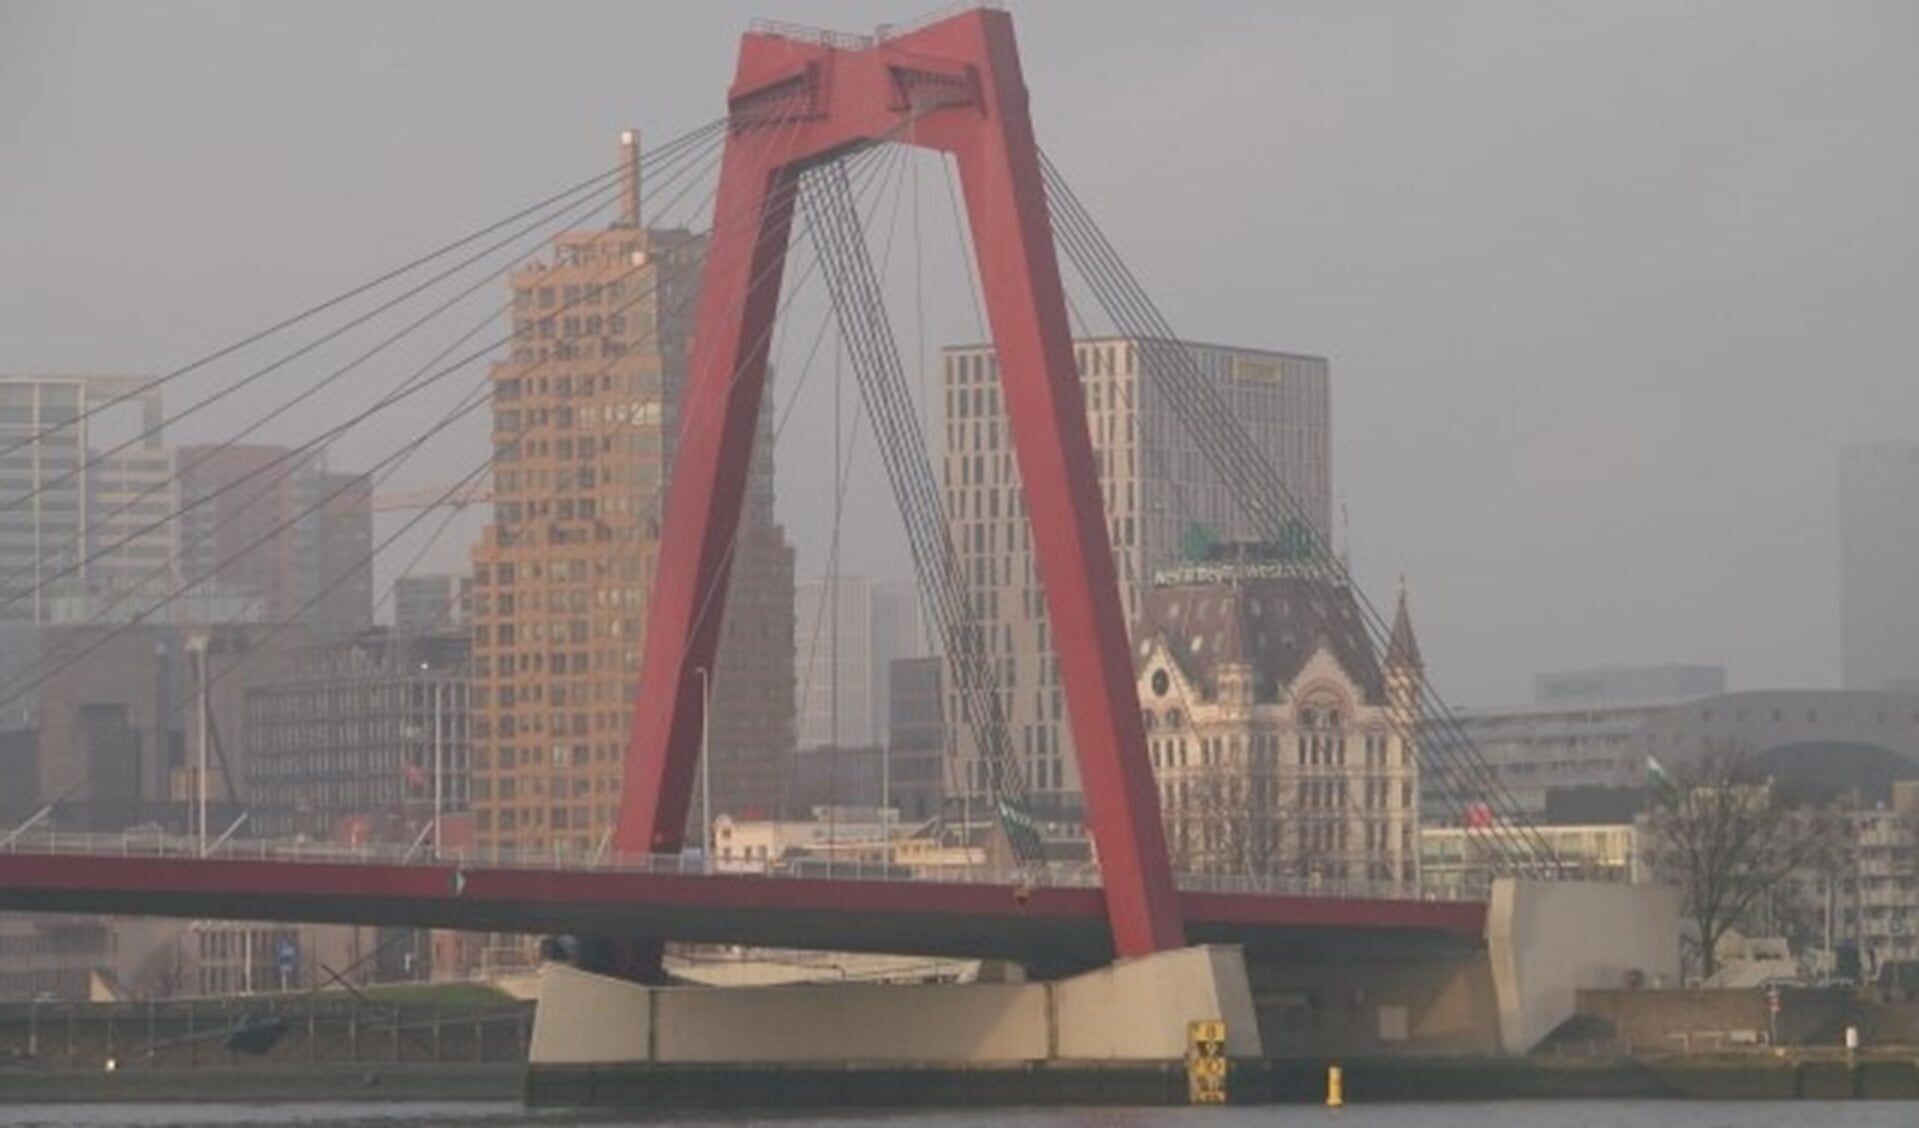 De Willemsbrug zal worden ingepakt en krijgt zijn oorspronkelijke kleur rood weer terug.